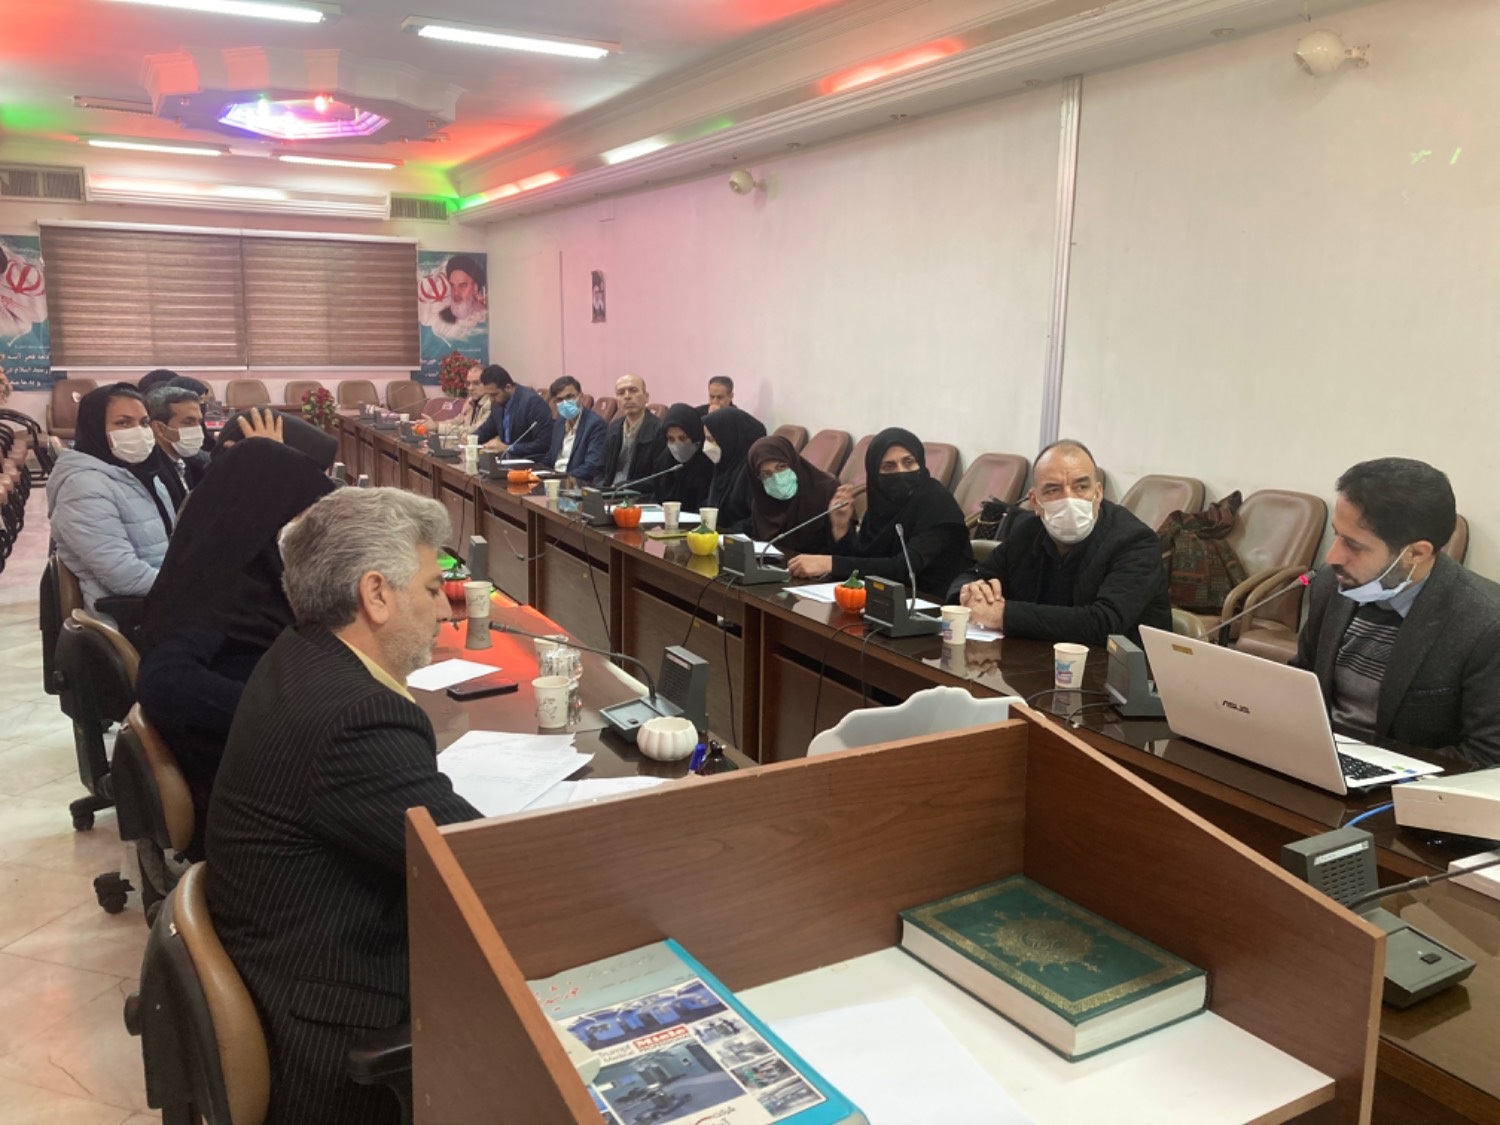 جلسه شورای فنی استانی در جاجرم / عزم معاونت بهداشتی برای ارتقاء خدمات بهداشتی در استان